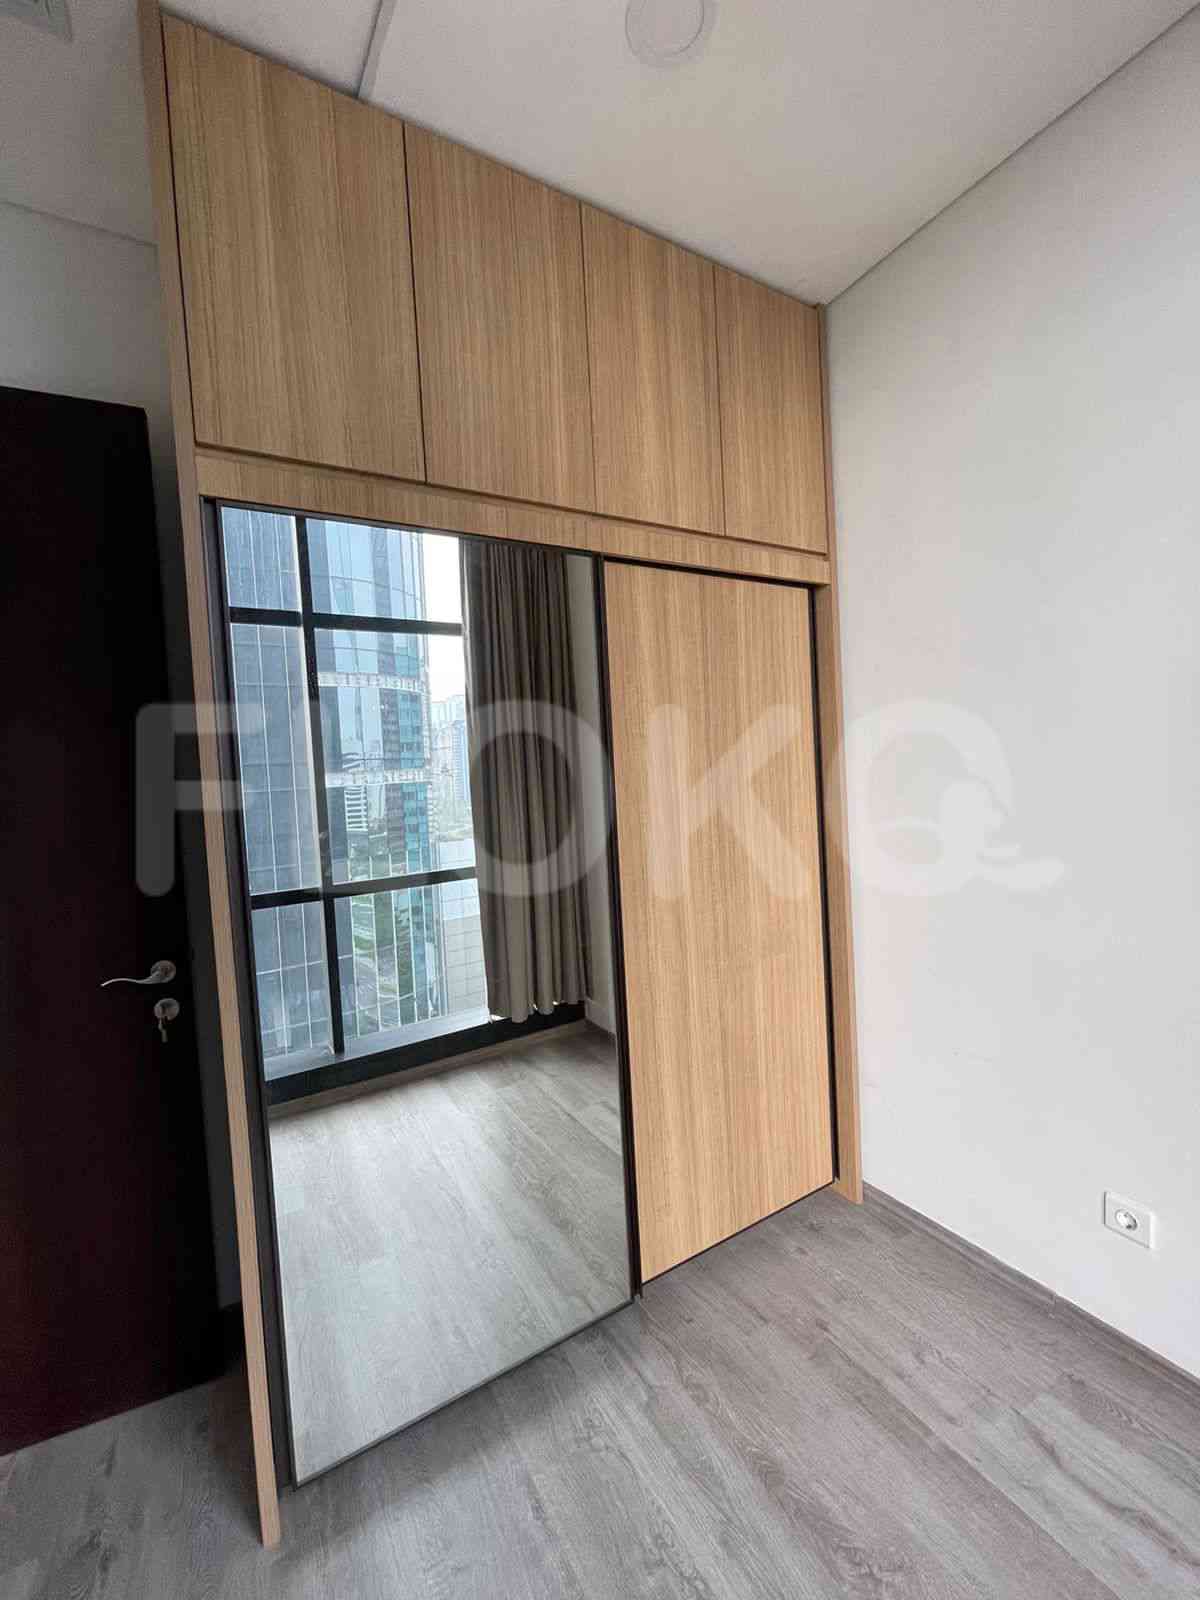 3 Bedroom on 10th Floor for Rent in Sudirman Suites Jakarta - fsuaf7 17